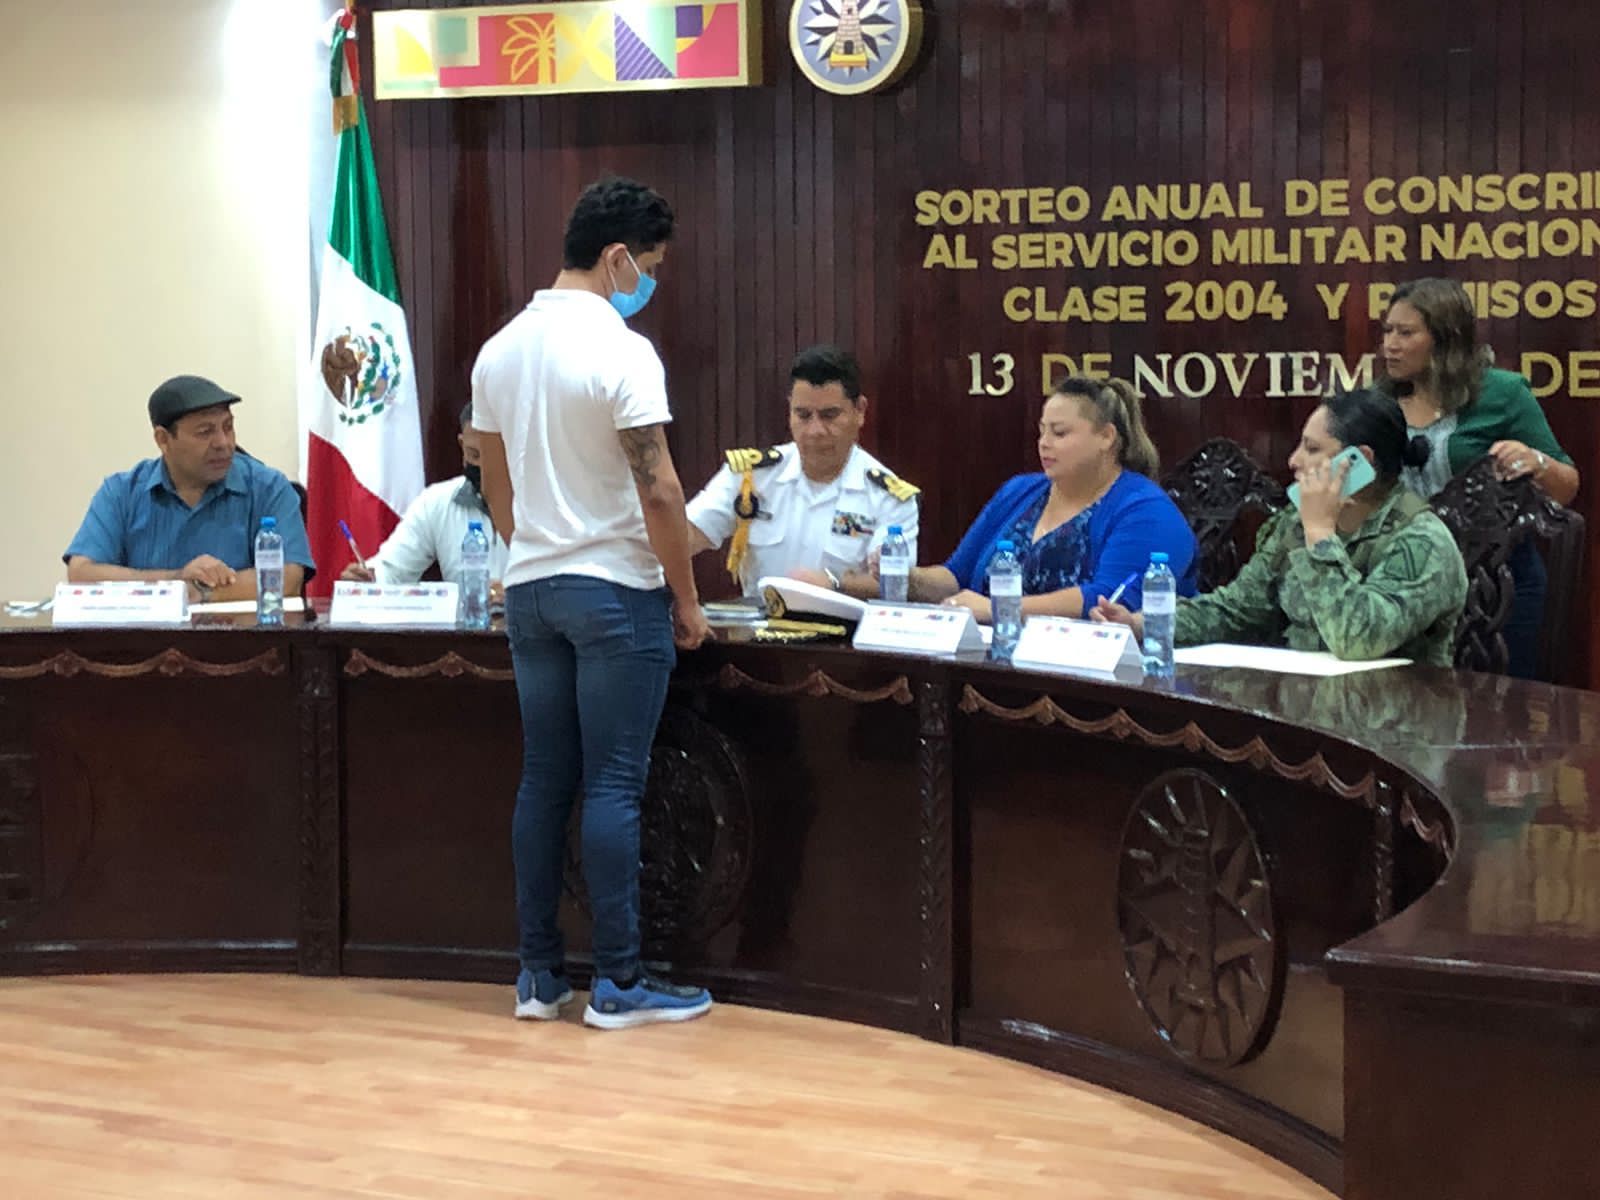 Se realiza Sorteo Anual de Conscriptos al Servicio Militar Nacional, Clase 2004 y Remisos 2022 en Isla Mujeres